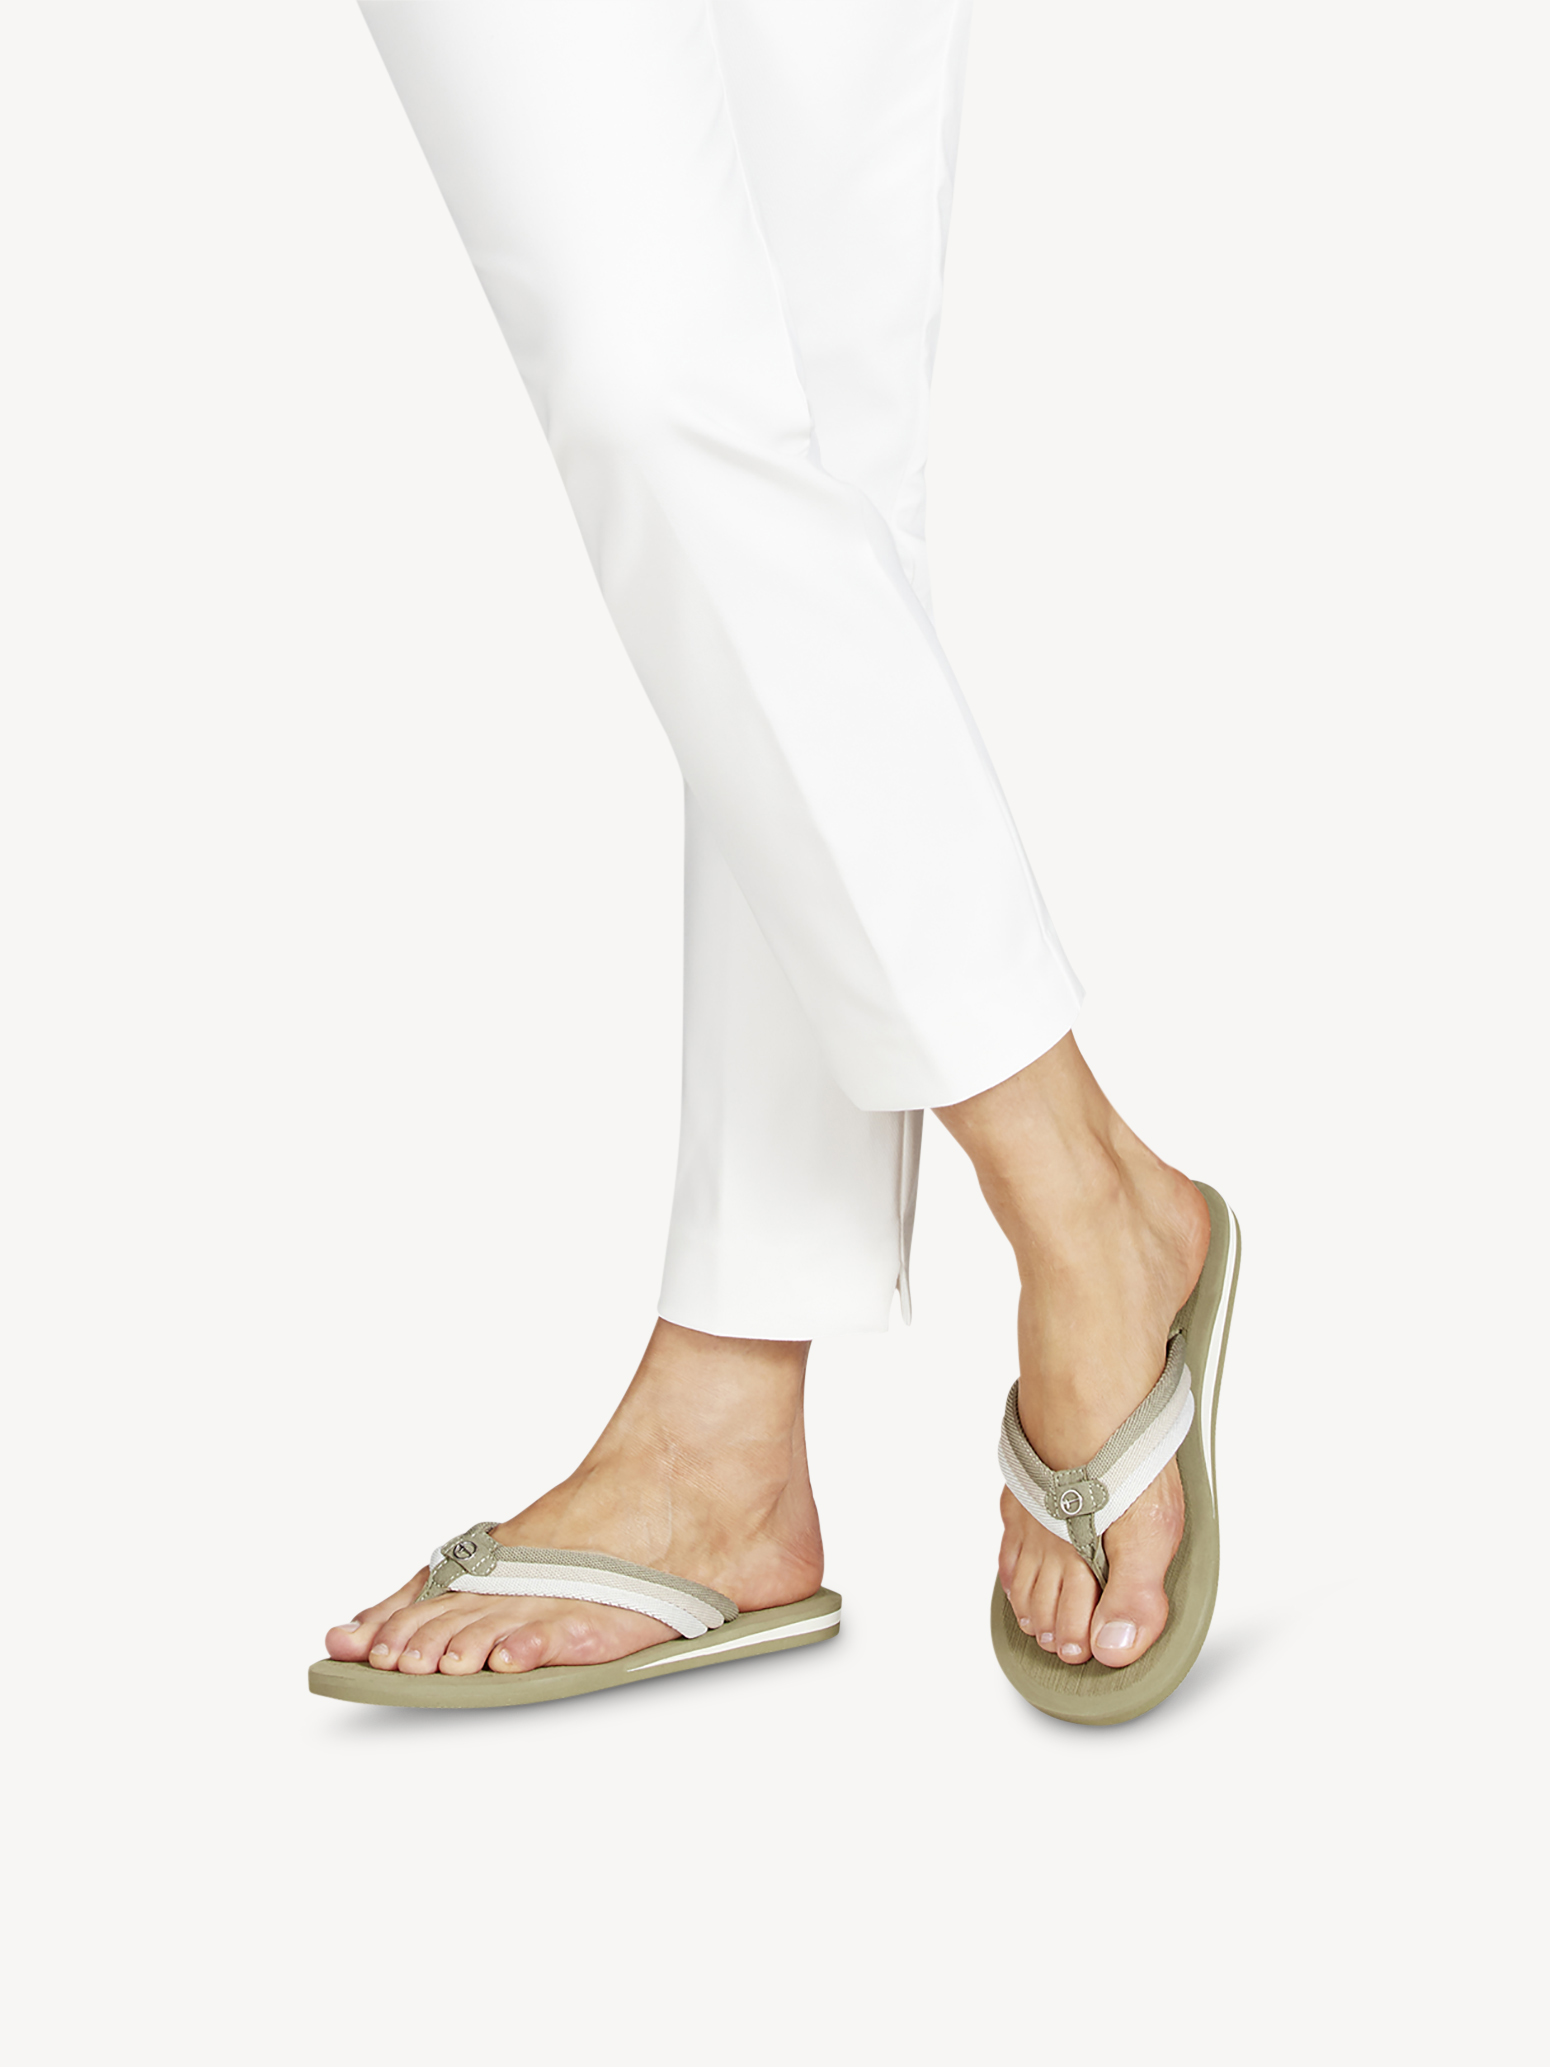 Туфли летние открытые жен. (фисташковый) - изображение №1